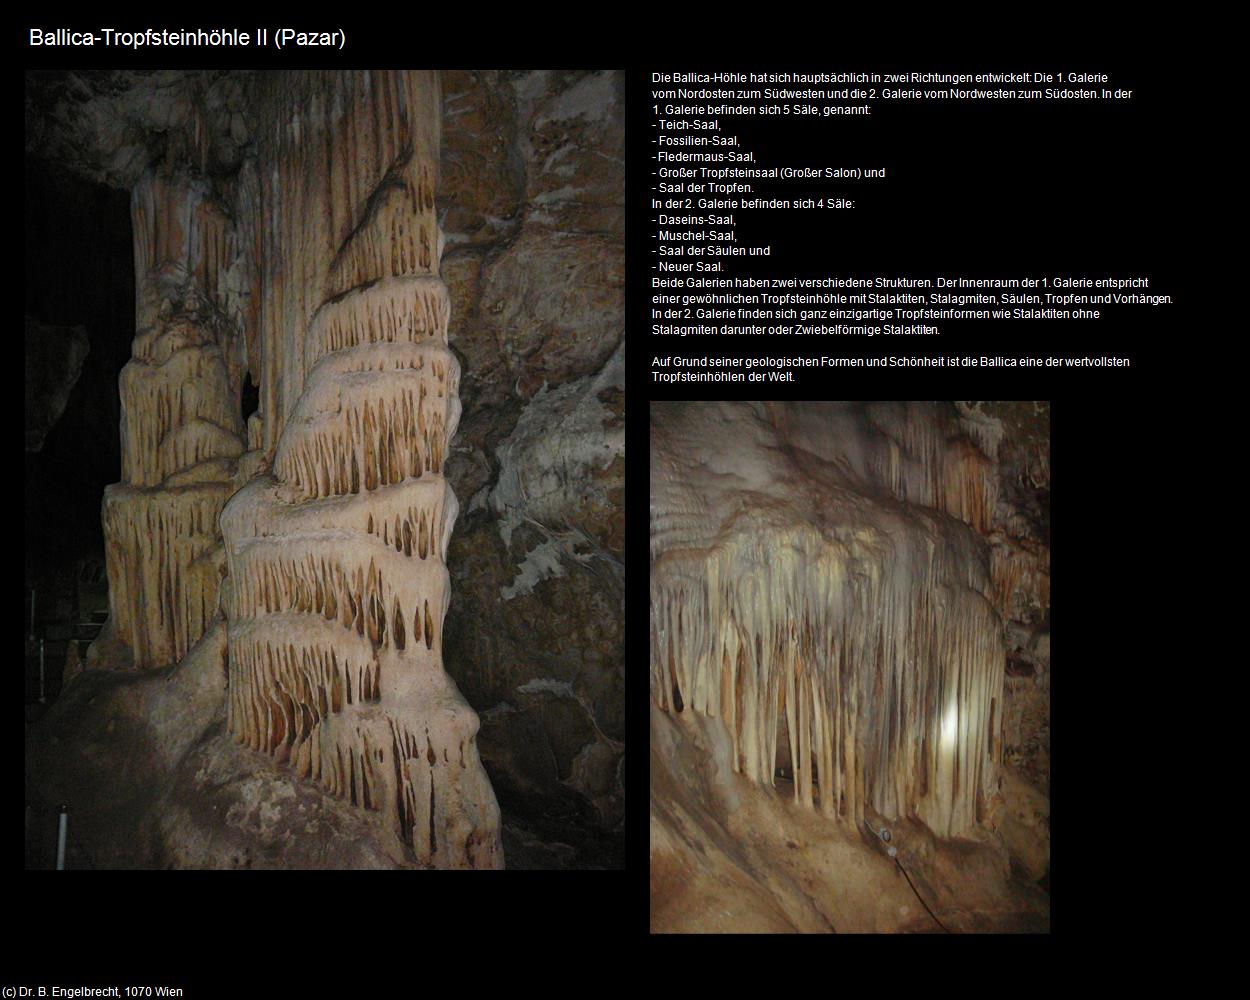 Ballica-Tropfsteinhöhle II (Pazar bei Tokat) in TÜRKEI